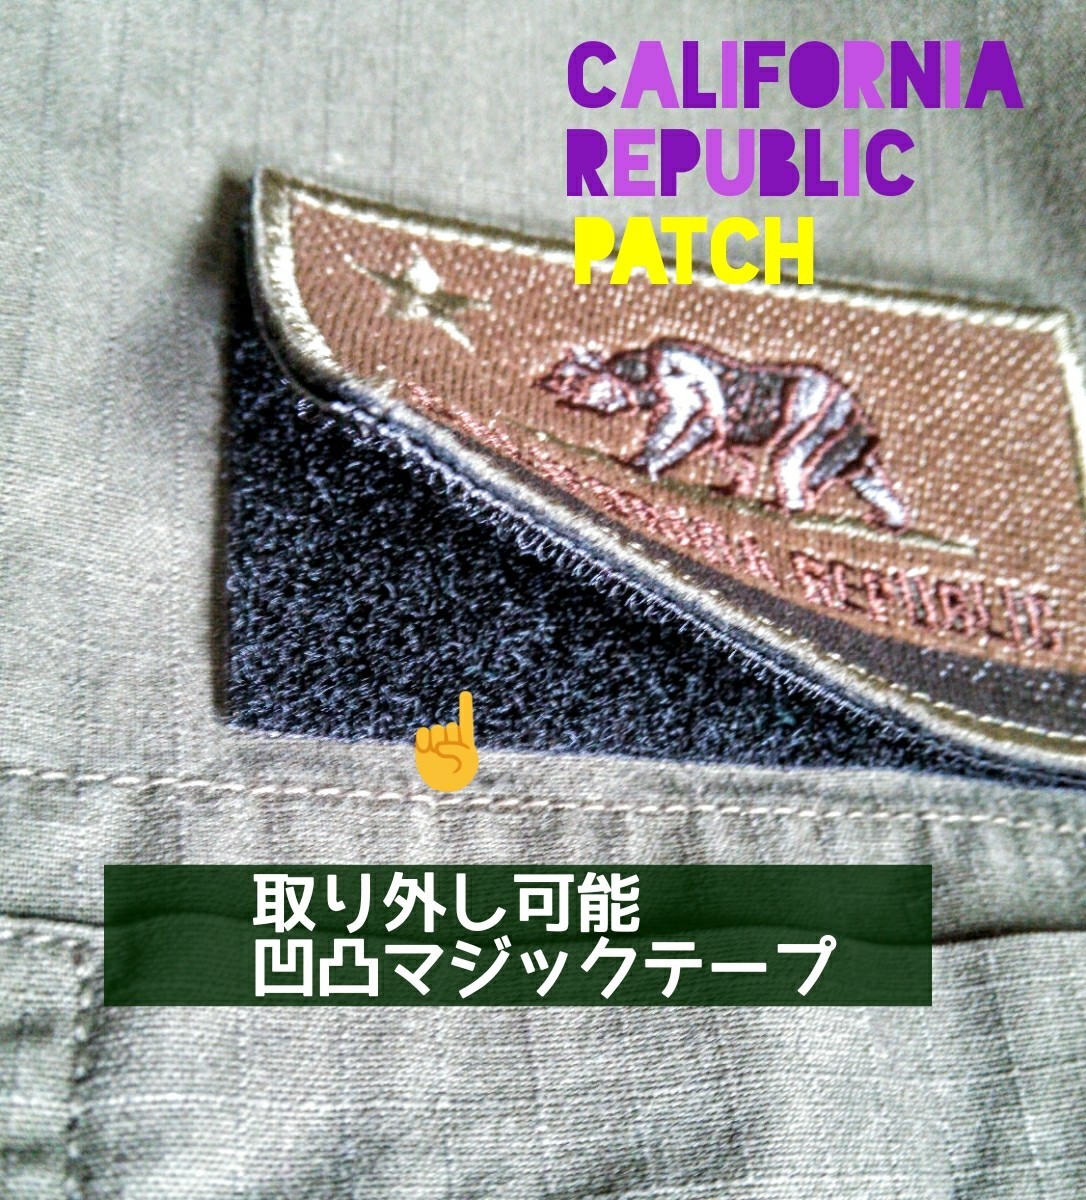 刺繍パッチ=ワッペン/カリフォルニア州ロゴ/着脱式マジックテープ付/8×5cm